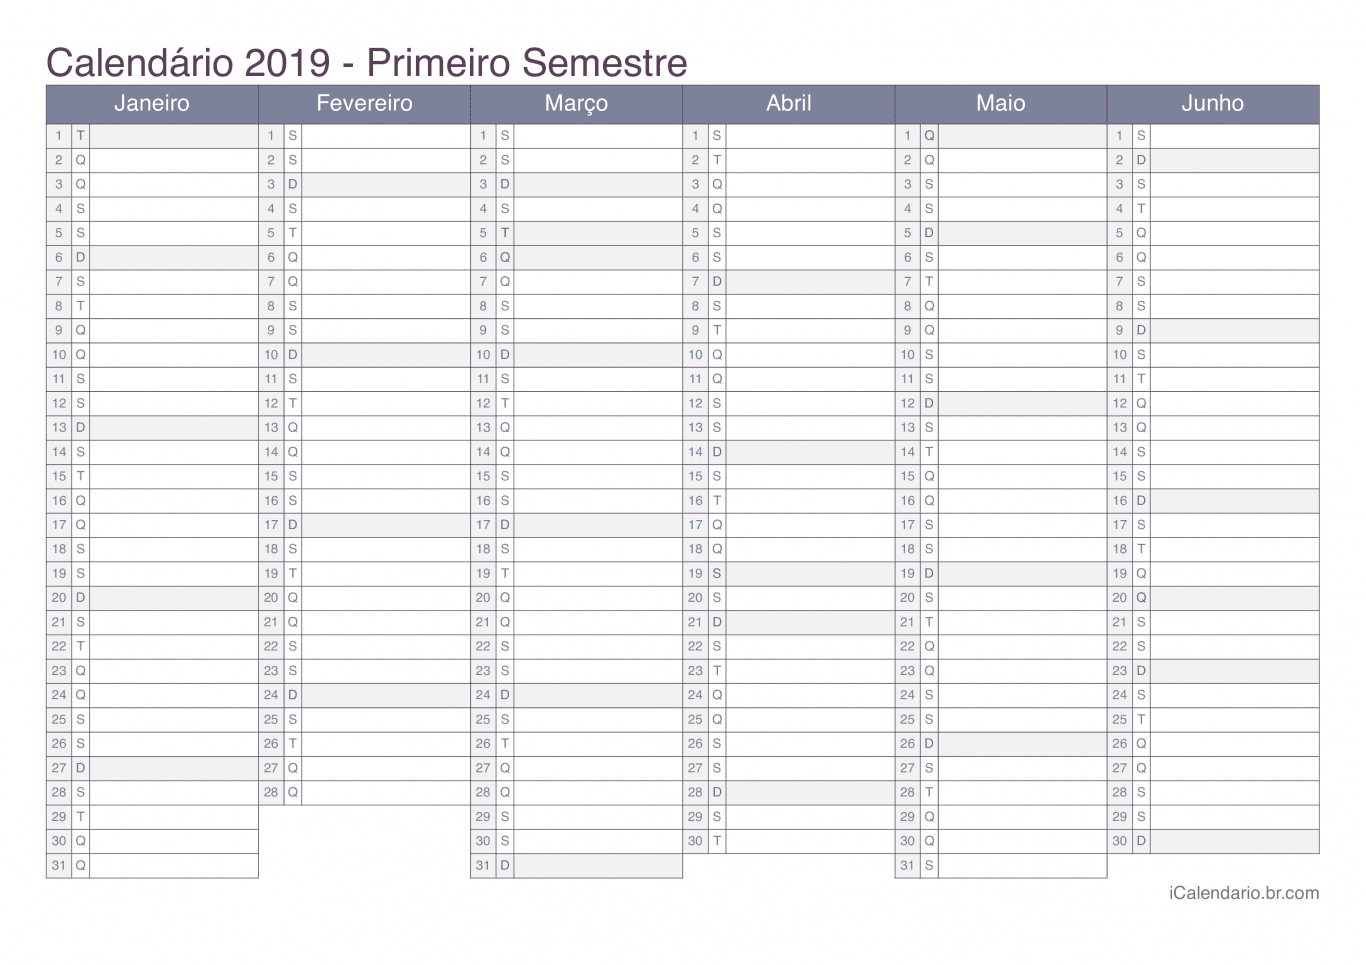 Calendário por semestre 2019 - Office